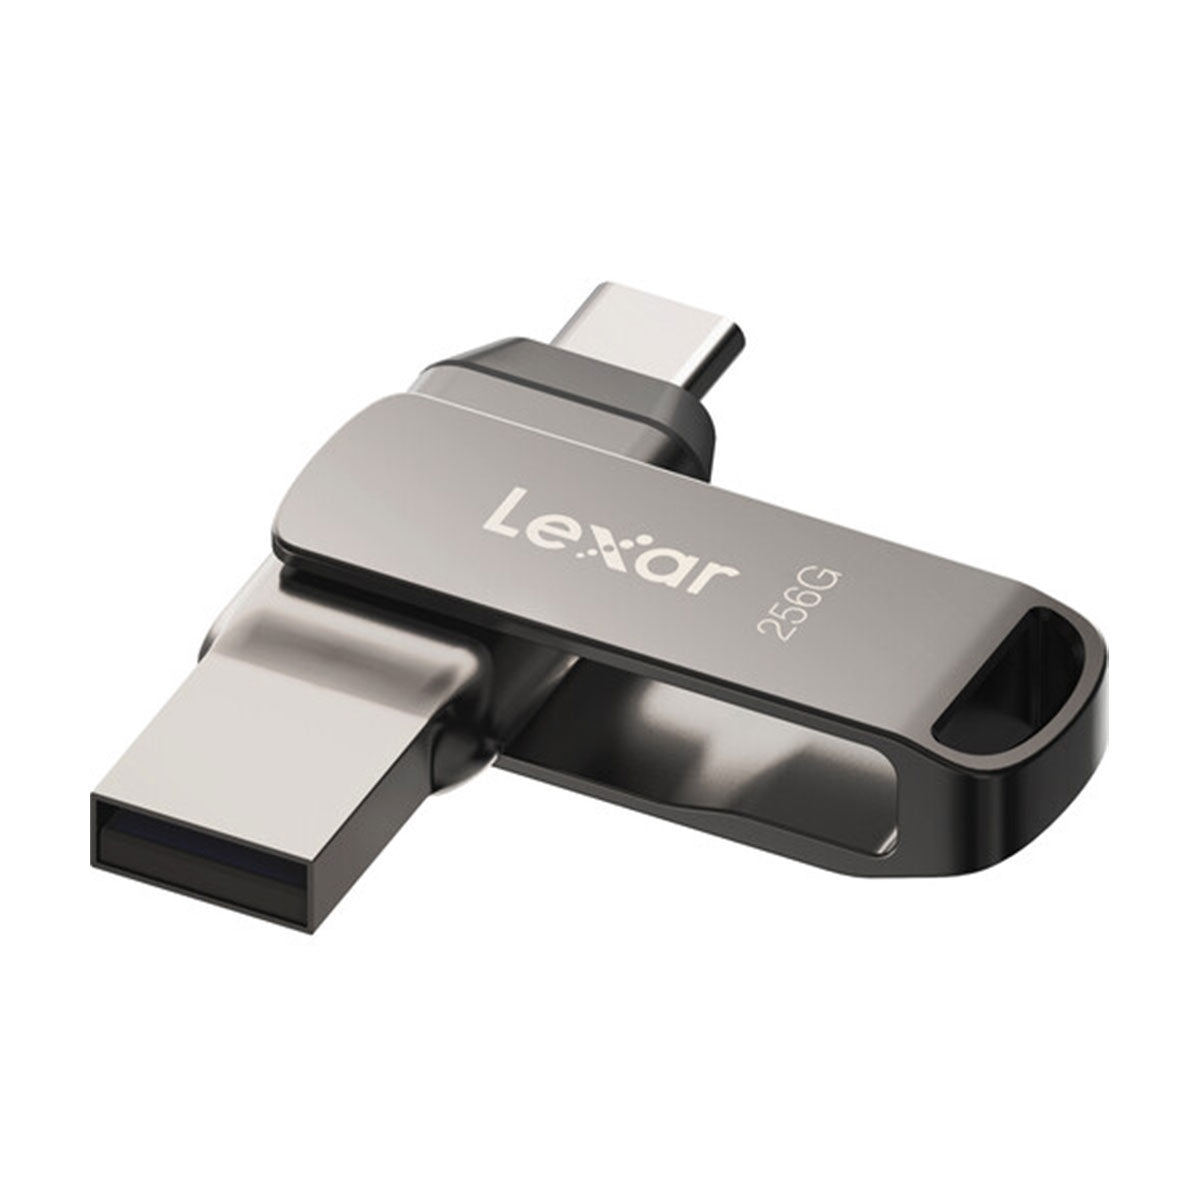 Lexar 256GB JumpDrive Dual USB 3.1 D400